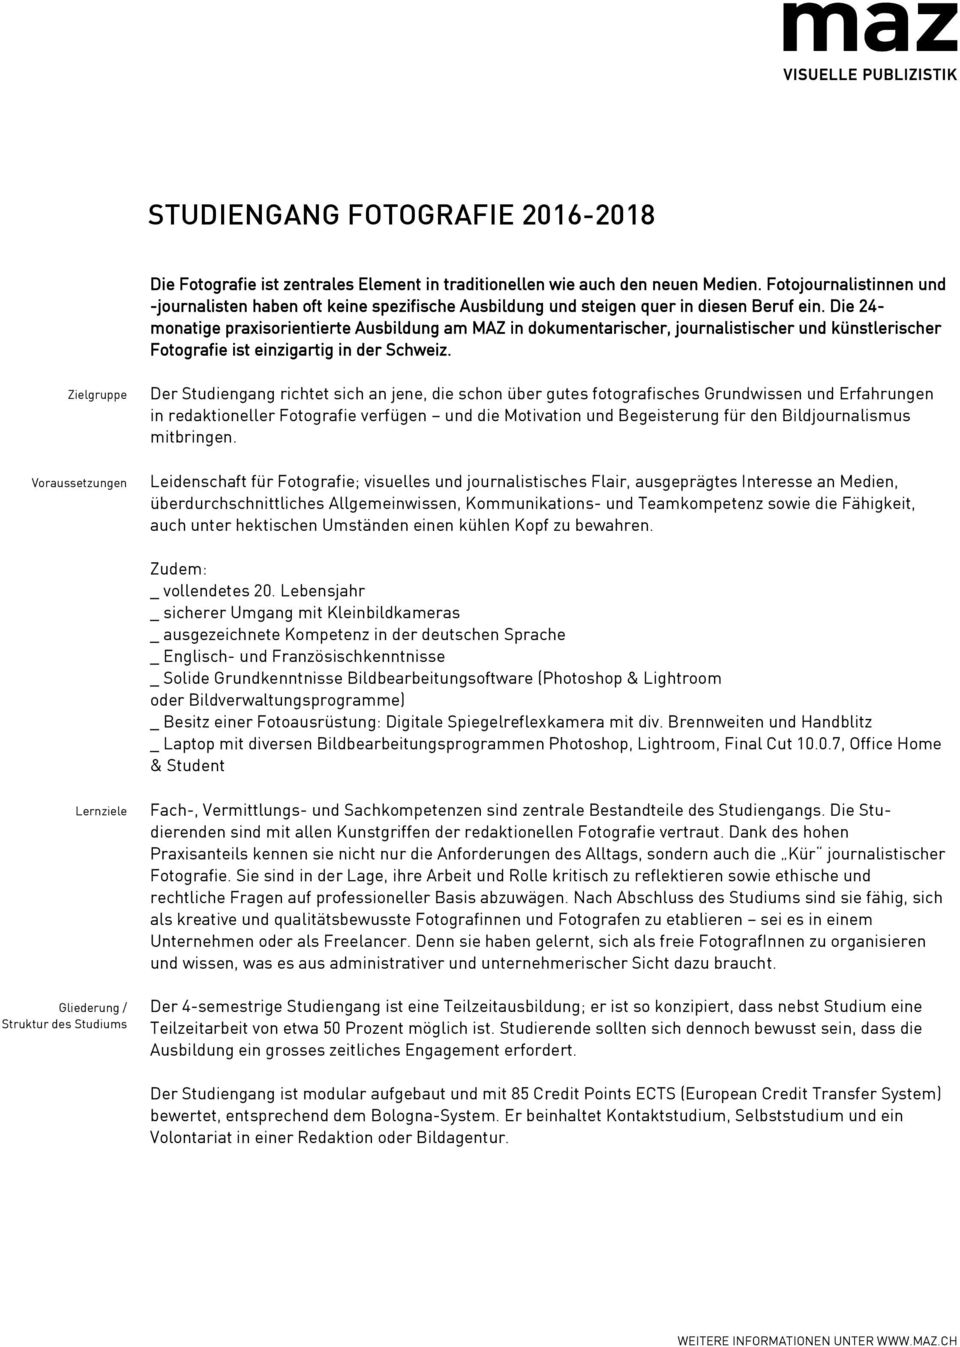 Die 24- monatige praxisorientierte Ausbildung am MAZ in dokumentarischer, journalistischer und künstlerischer Fotografie ist einzigartig in der Schweiz.